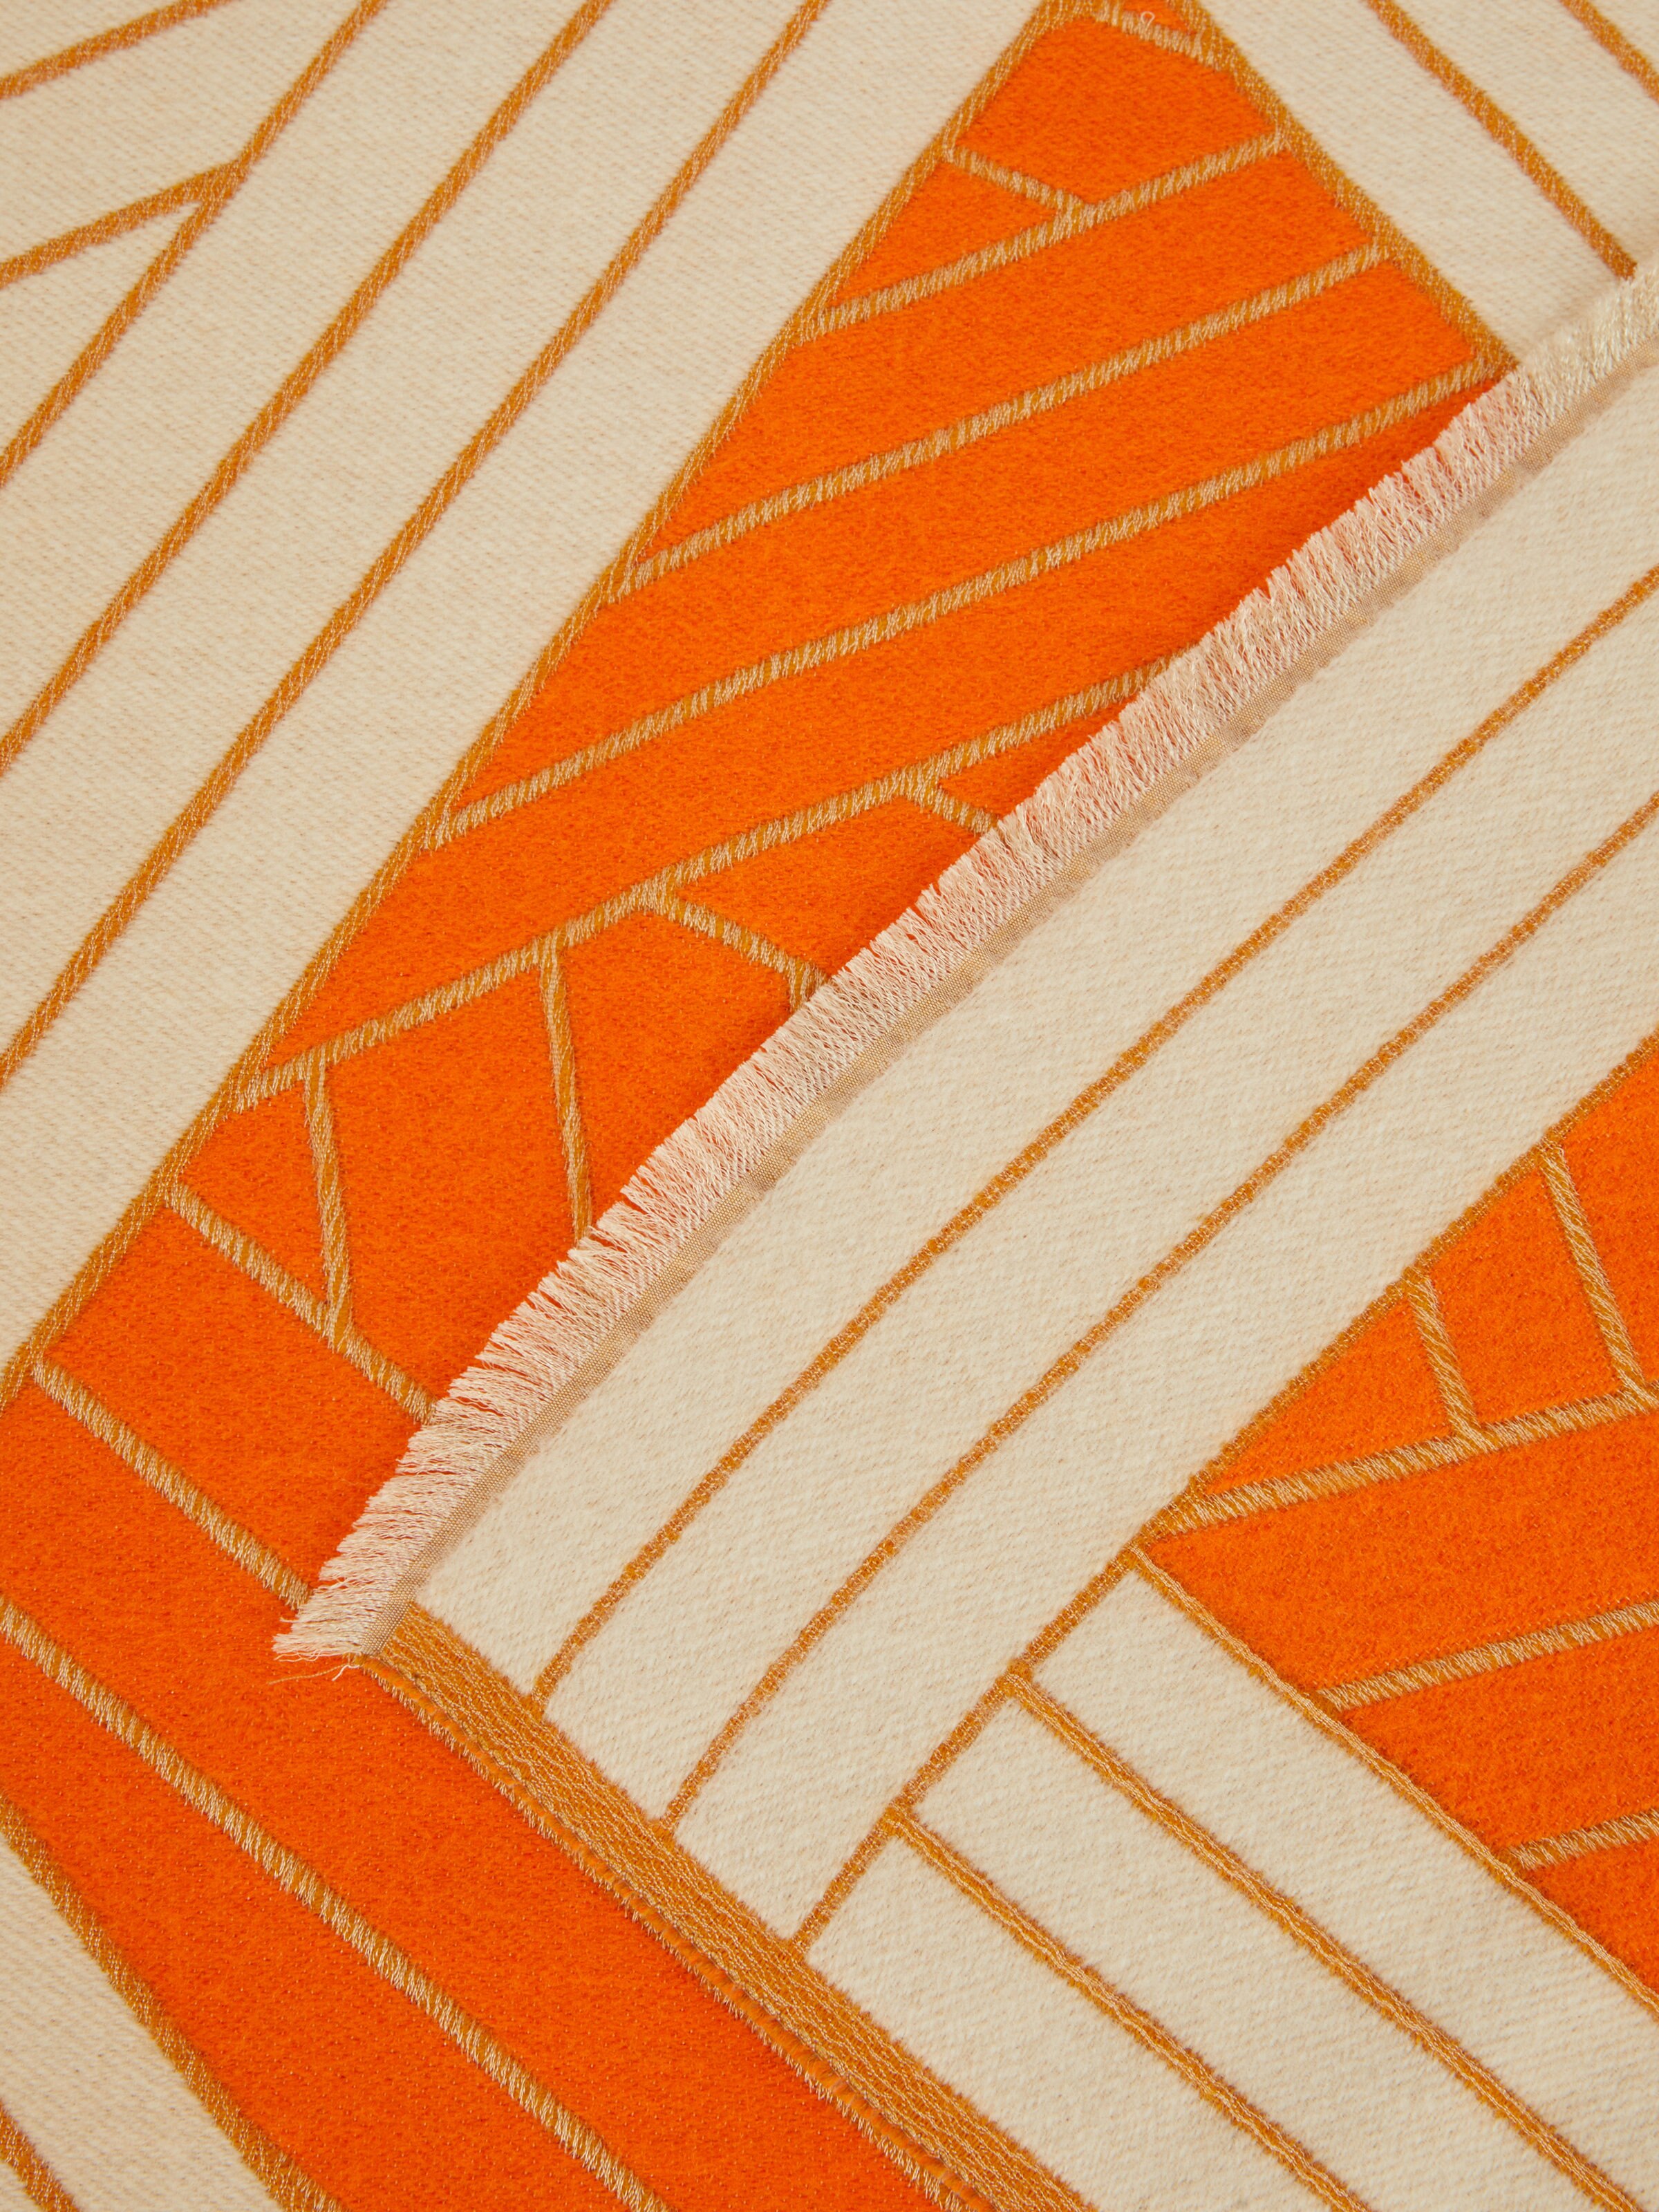 Manta Nastri 135×190 cm en lana, cachemira y seda, Naranja - 2